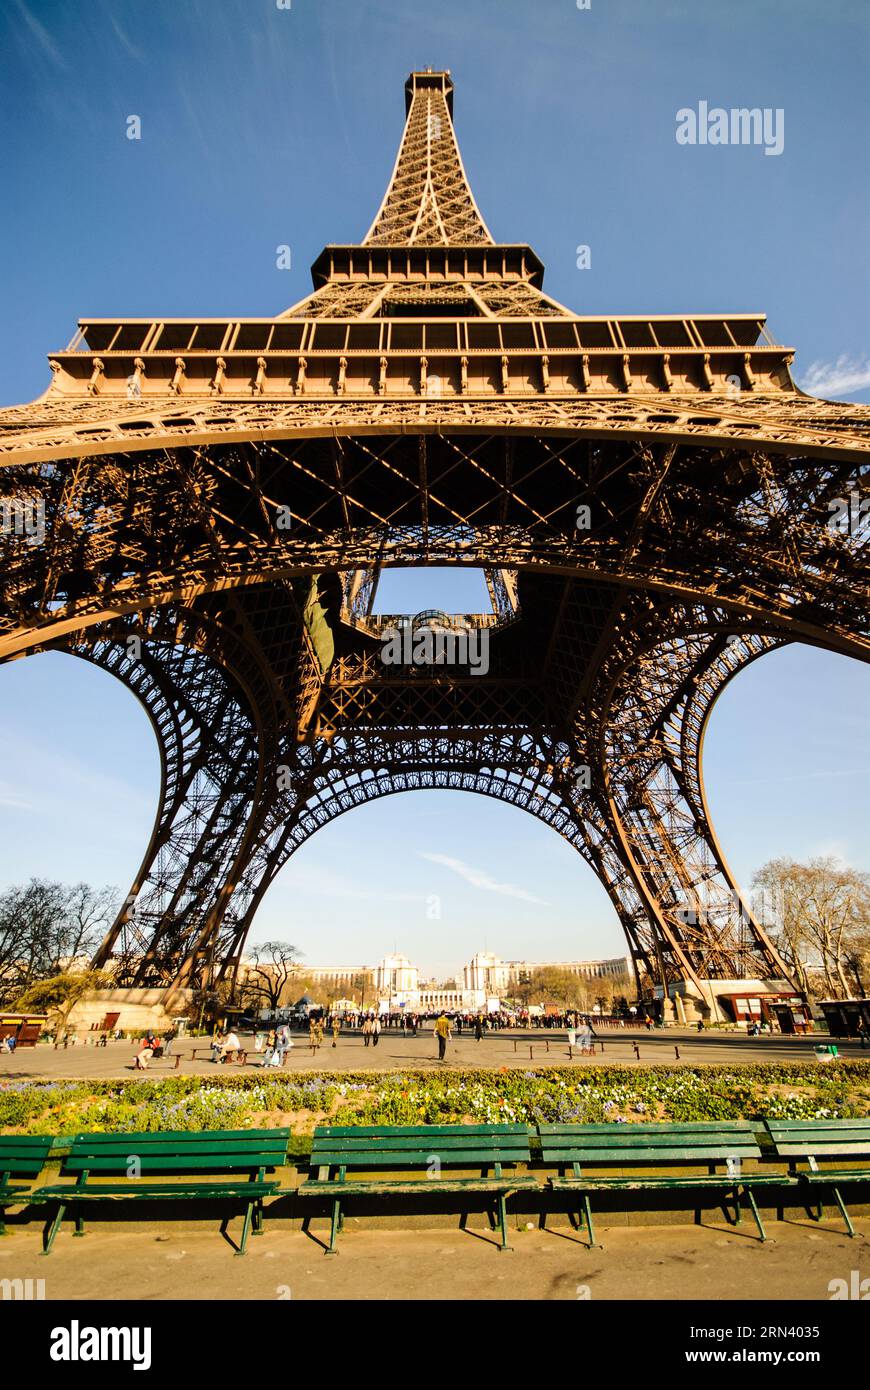 PARIS, France — la Tour Eiffel se dresse face à la ligne d'horizon parisienne, représentant de manière emblématique les prouesses architecturales françaises. Construite en 1889 comme arche d'entrée pour l'exposition universelle de 1889, cette tour en treillis de fer est non seulement un symbole de Paris, mais aussi un emblème durable de la réalisation de l'ingénierie humaine. Banque D'Images